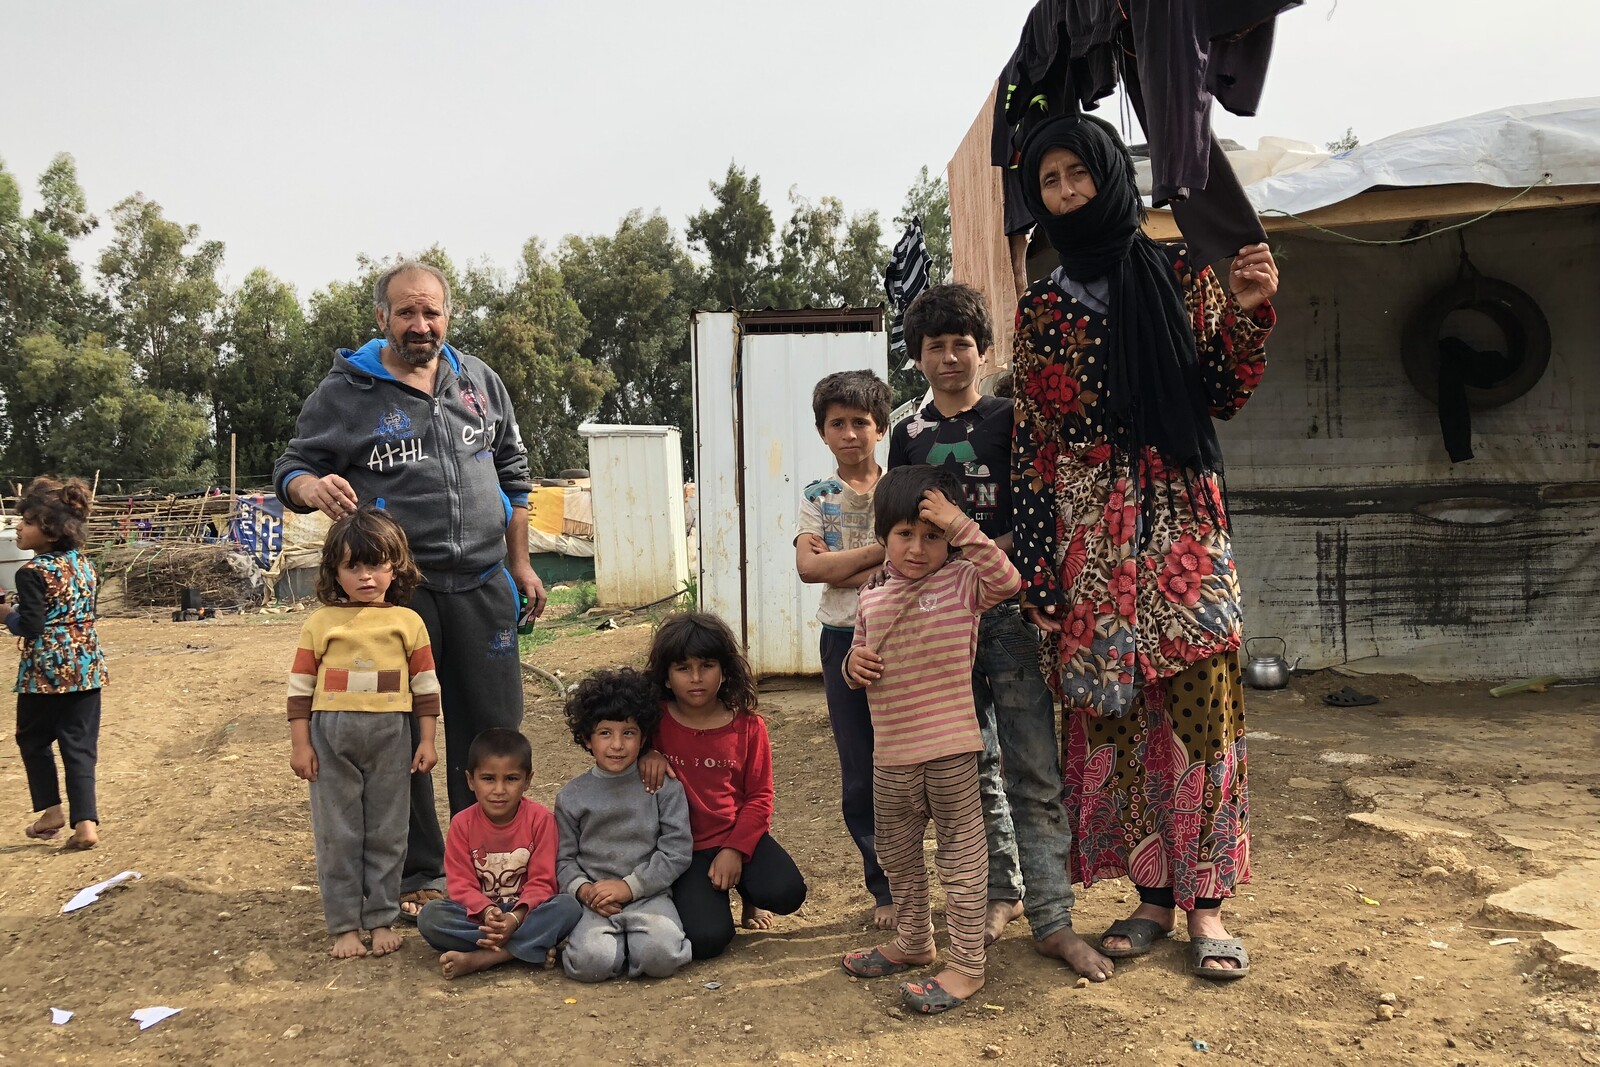 Ali el Ali (Name verändert), 48 Jahre lebt mit seiner Familie in einem informellen Camp. Manche Häuser hier haben keine richtigen Toiletten, viele Kinder haben dadurch Krankheiten bekommen. 